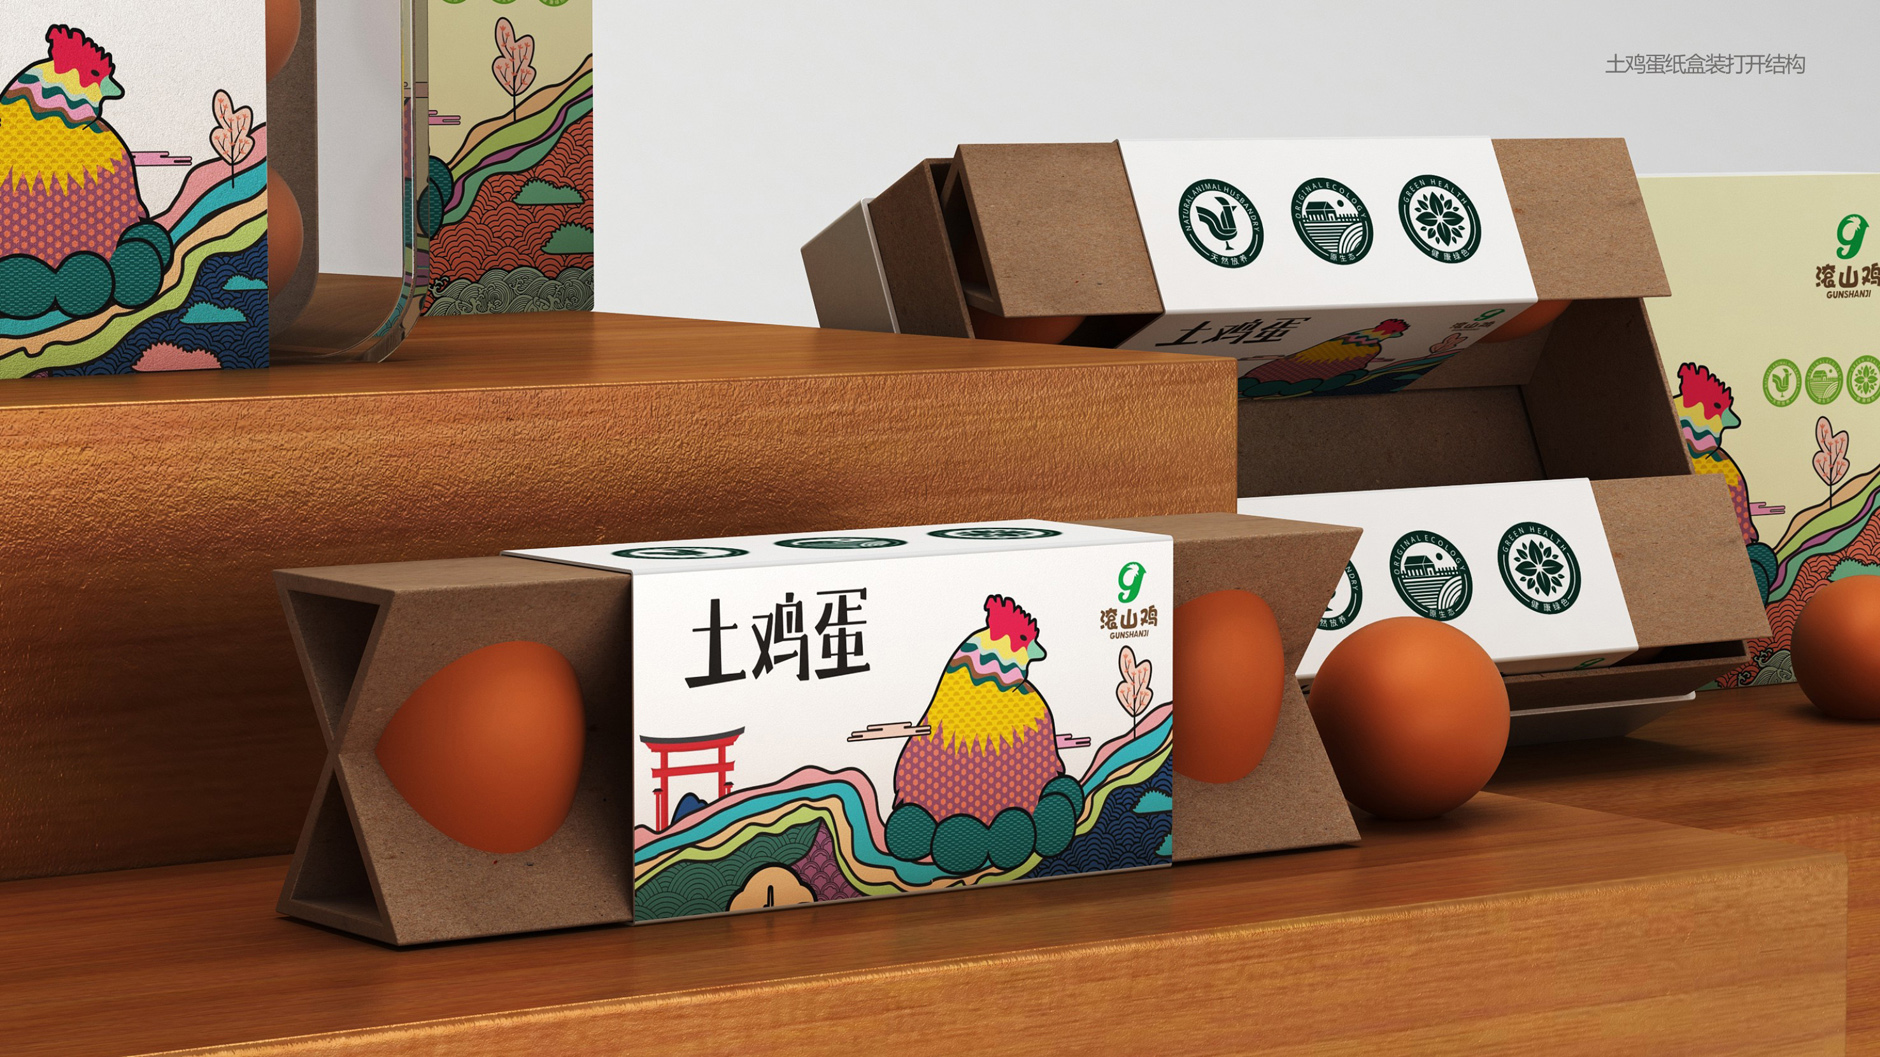 农产品包装设计 土鸡蛋包装设计 滚山鸡产品包装设计